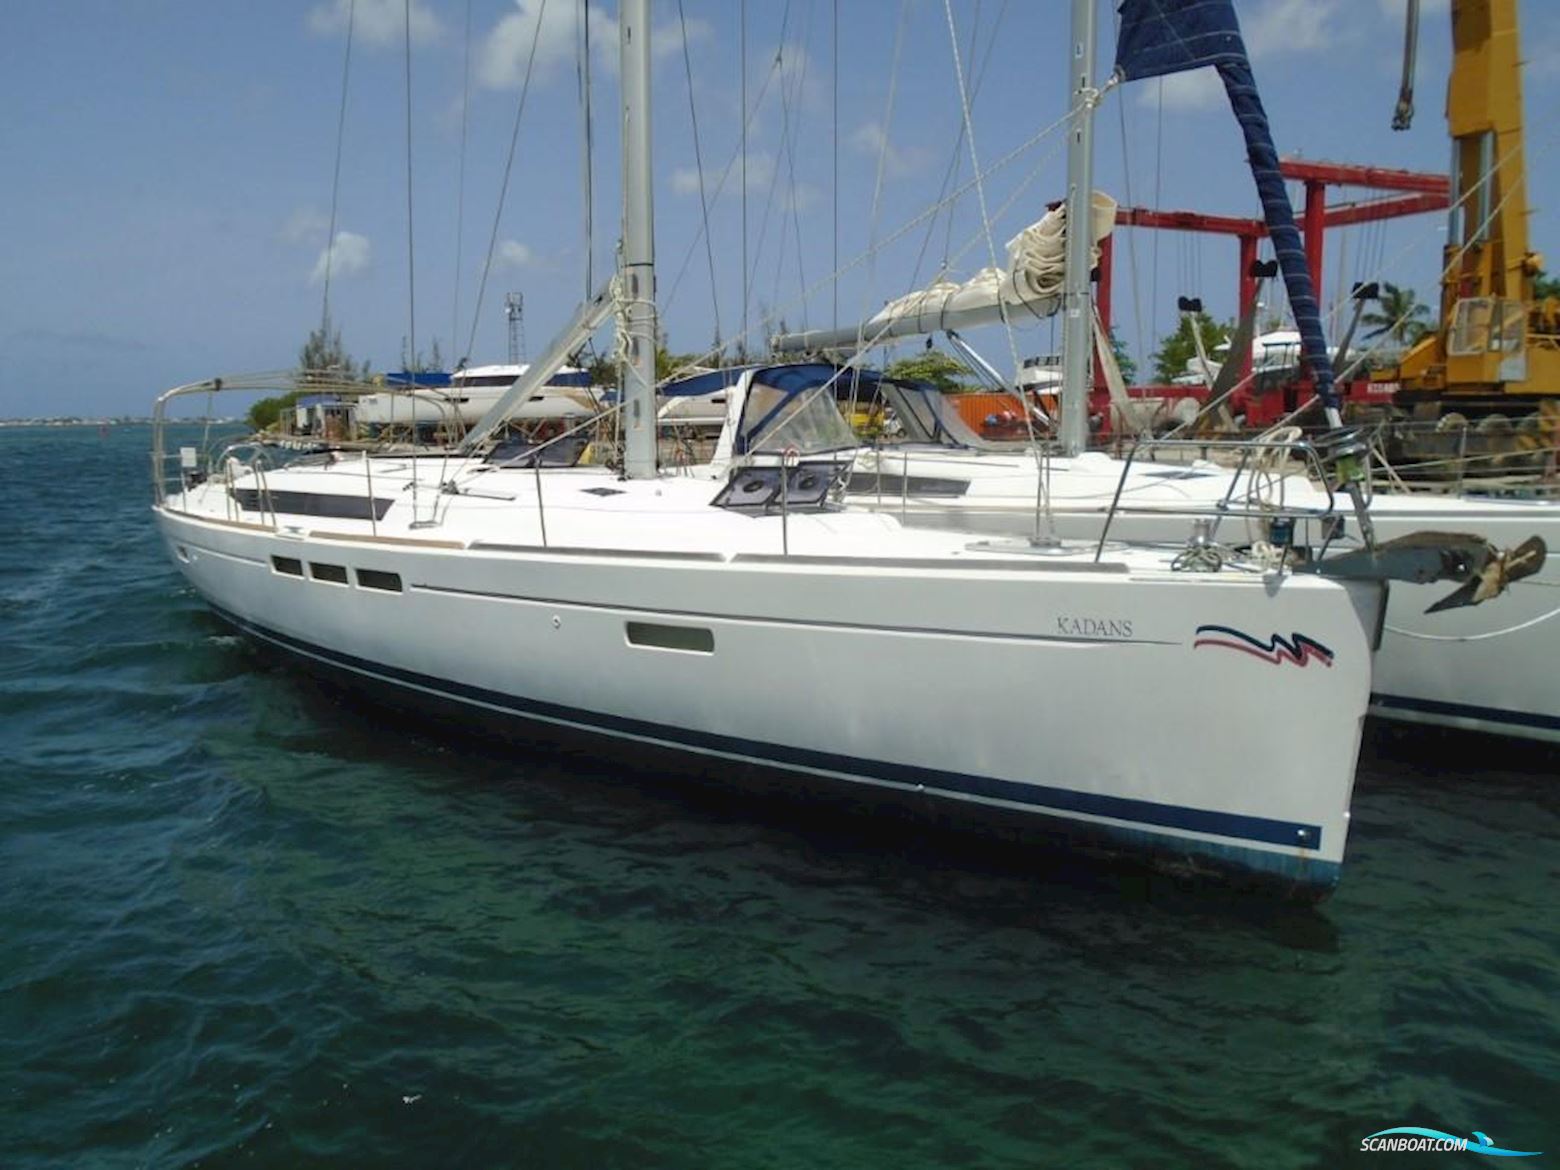 Jeanneau Sun Odyssey 509 Sejlbåd 2015, med Yanmar motor, Ingen land info